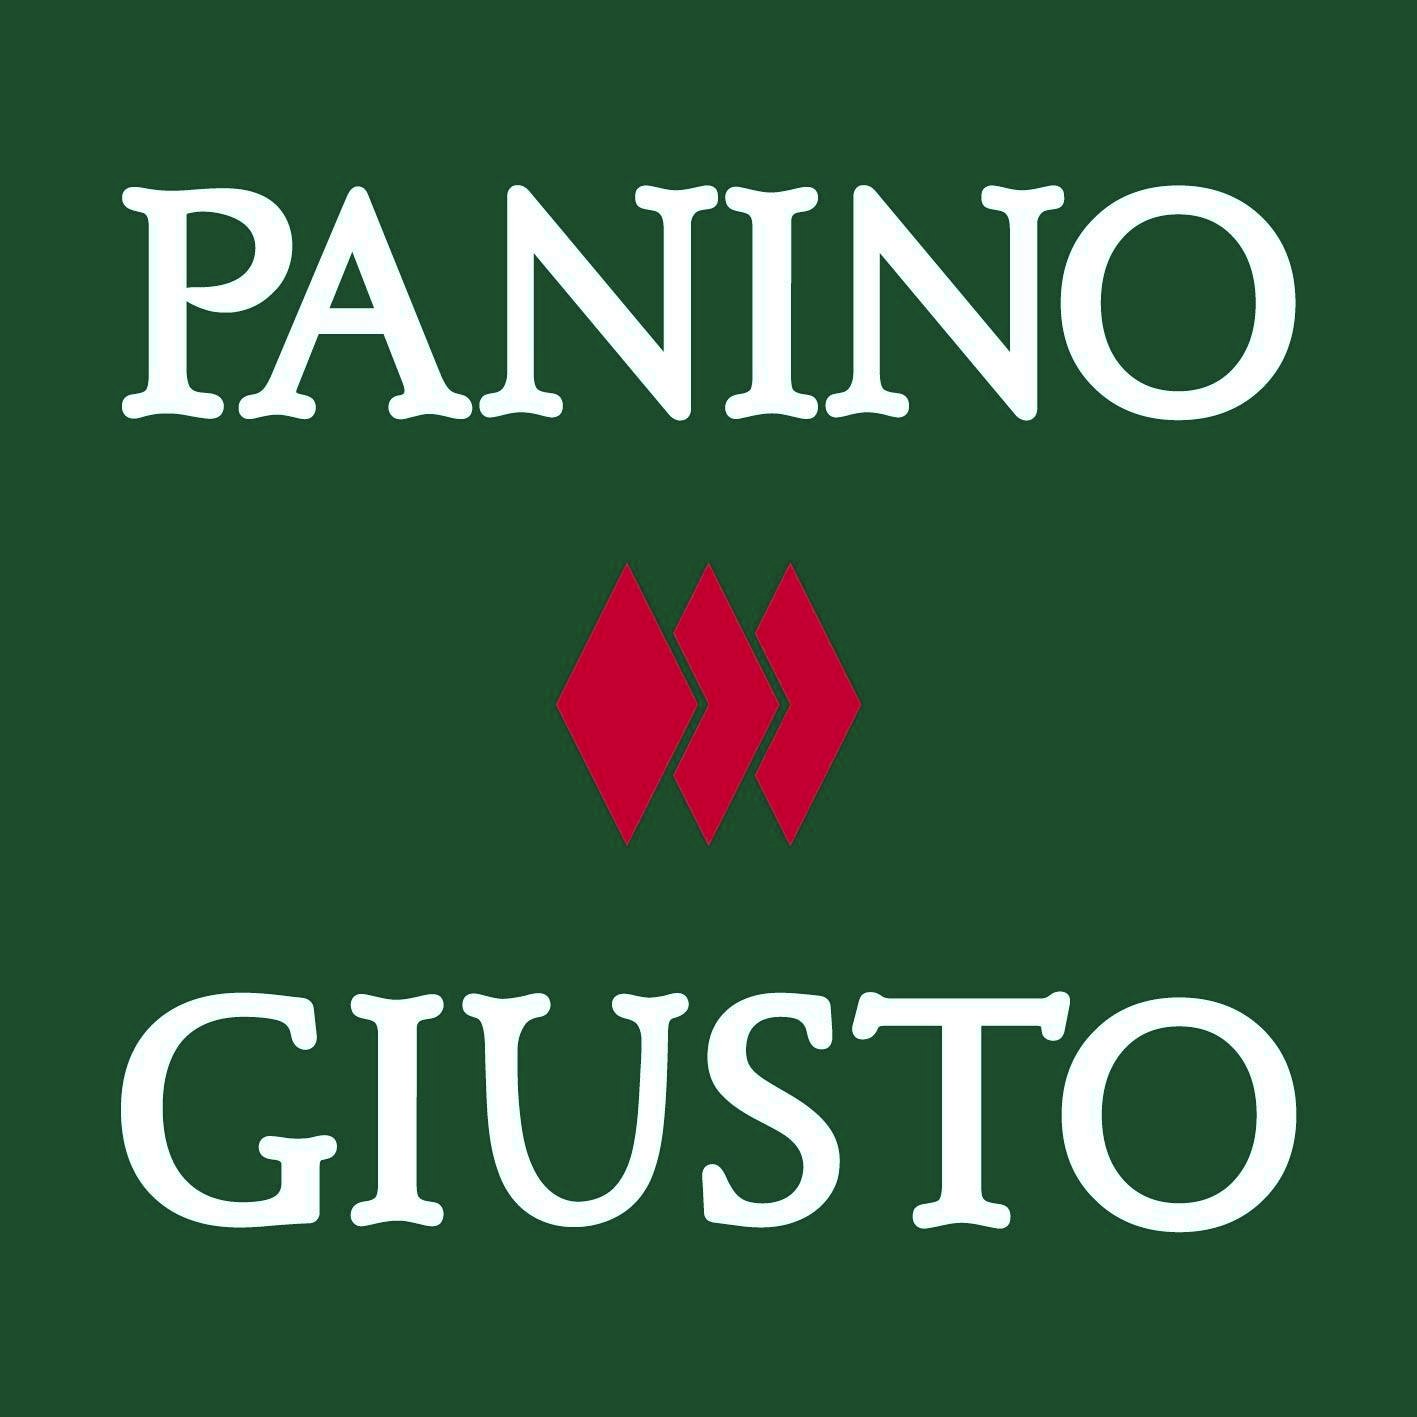 Panino Giusto: The Italian Art of the Panino.